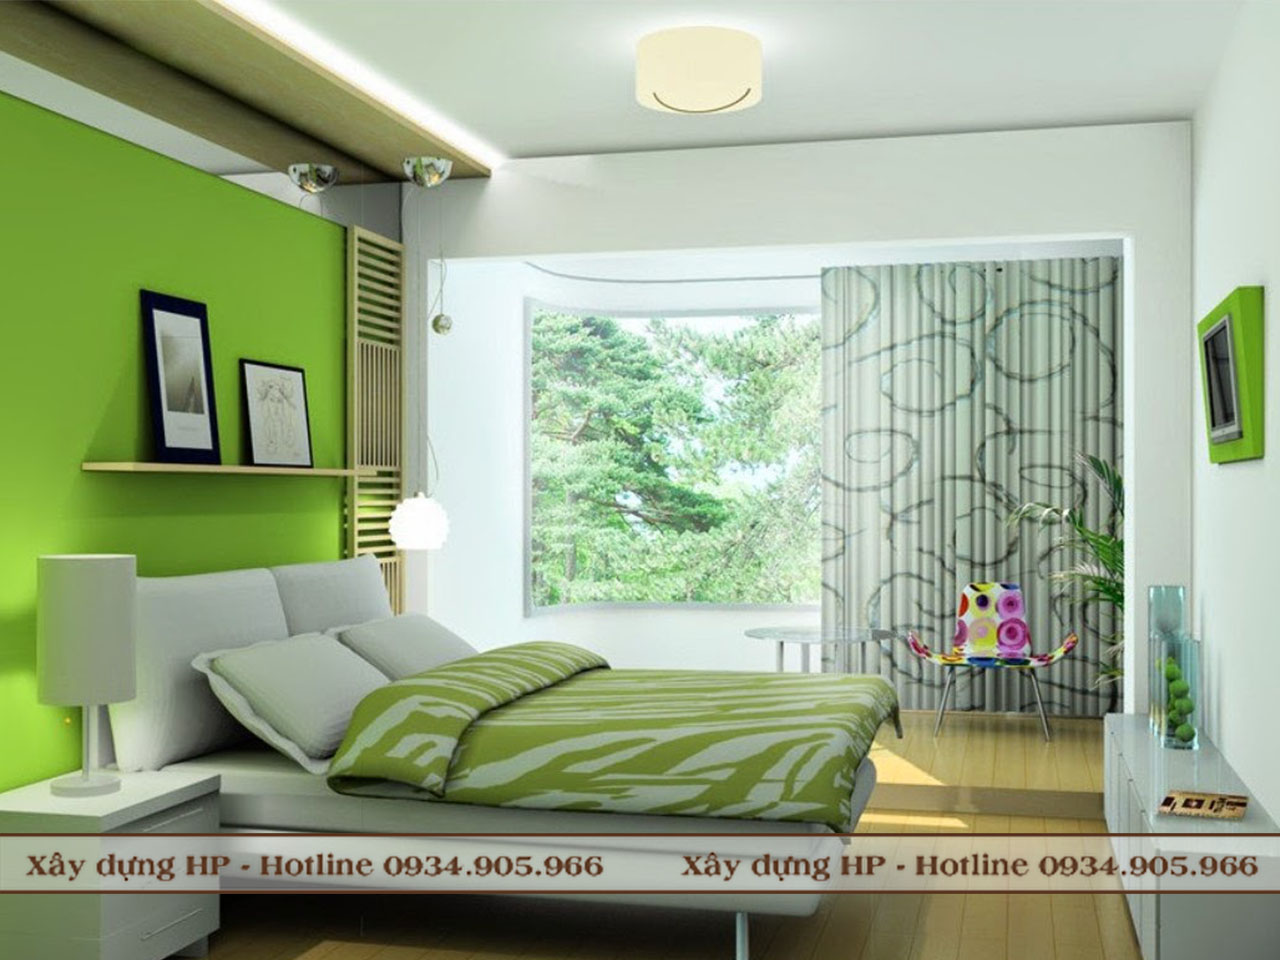 Thiết kế nội thất phòng ngủ màu xanh lá tại Hải Phòng